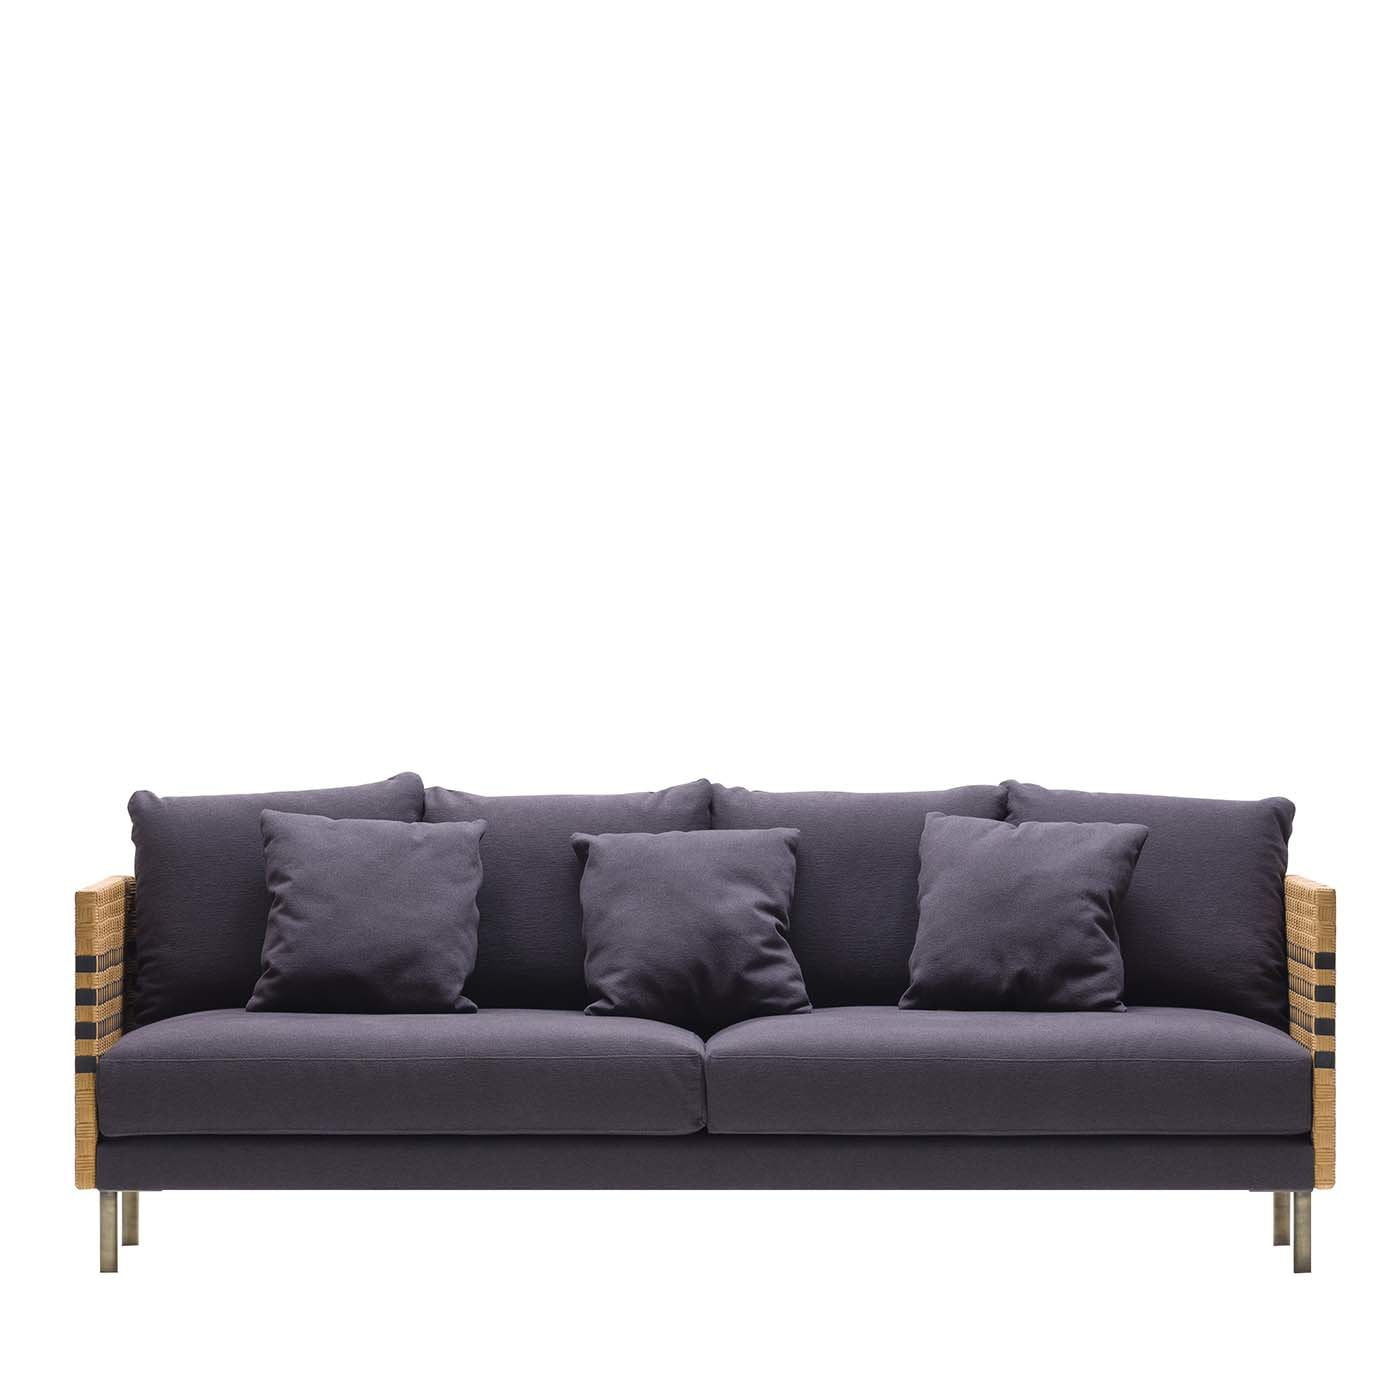 Milli 3-Seater Sofa by Angeletti Ruzza Design - Main view